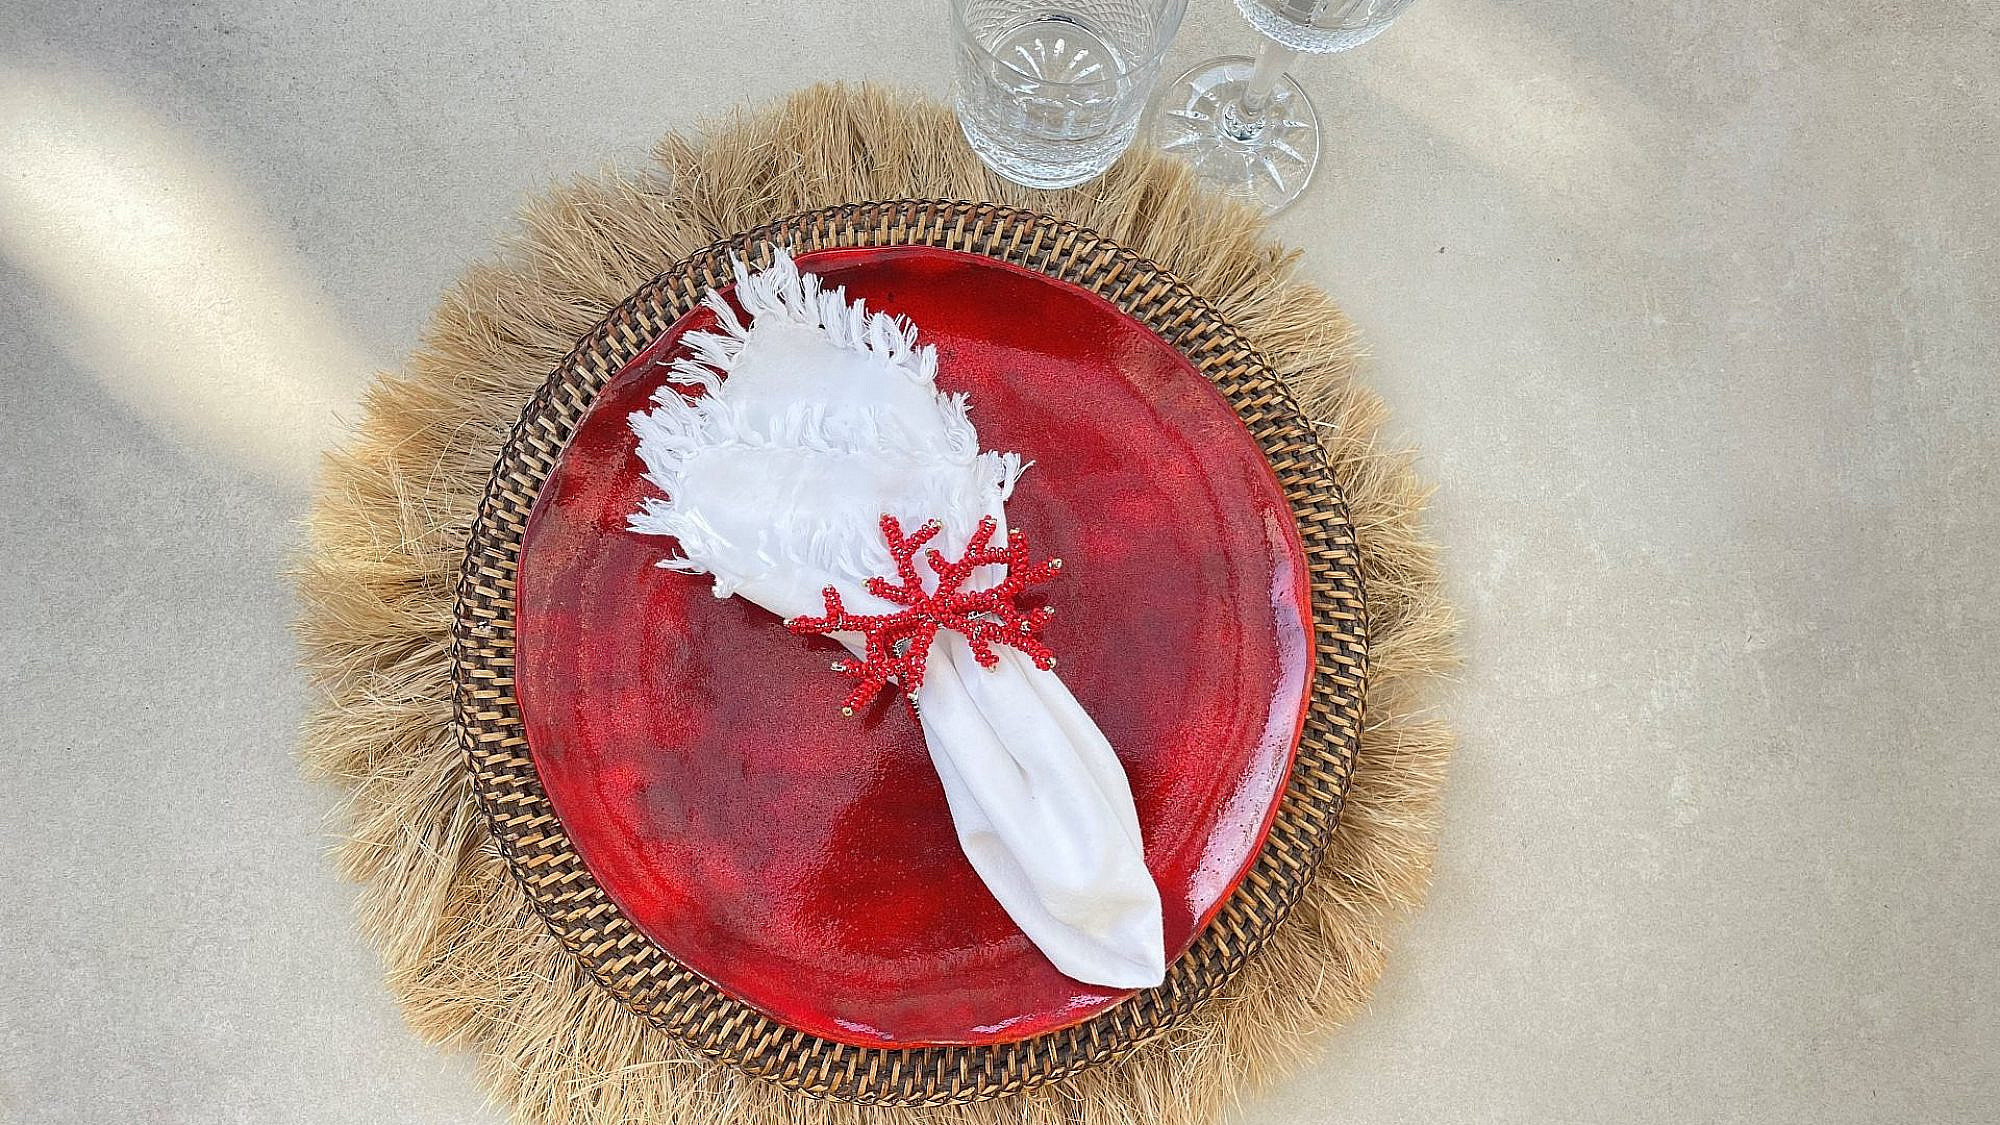 כלי אוכל מקרמיקה בעבודת יד של שרון צ'צ'יק | צילום: שרון צ'צ'יק   sharontchetchik@